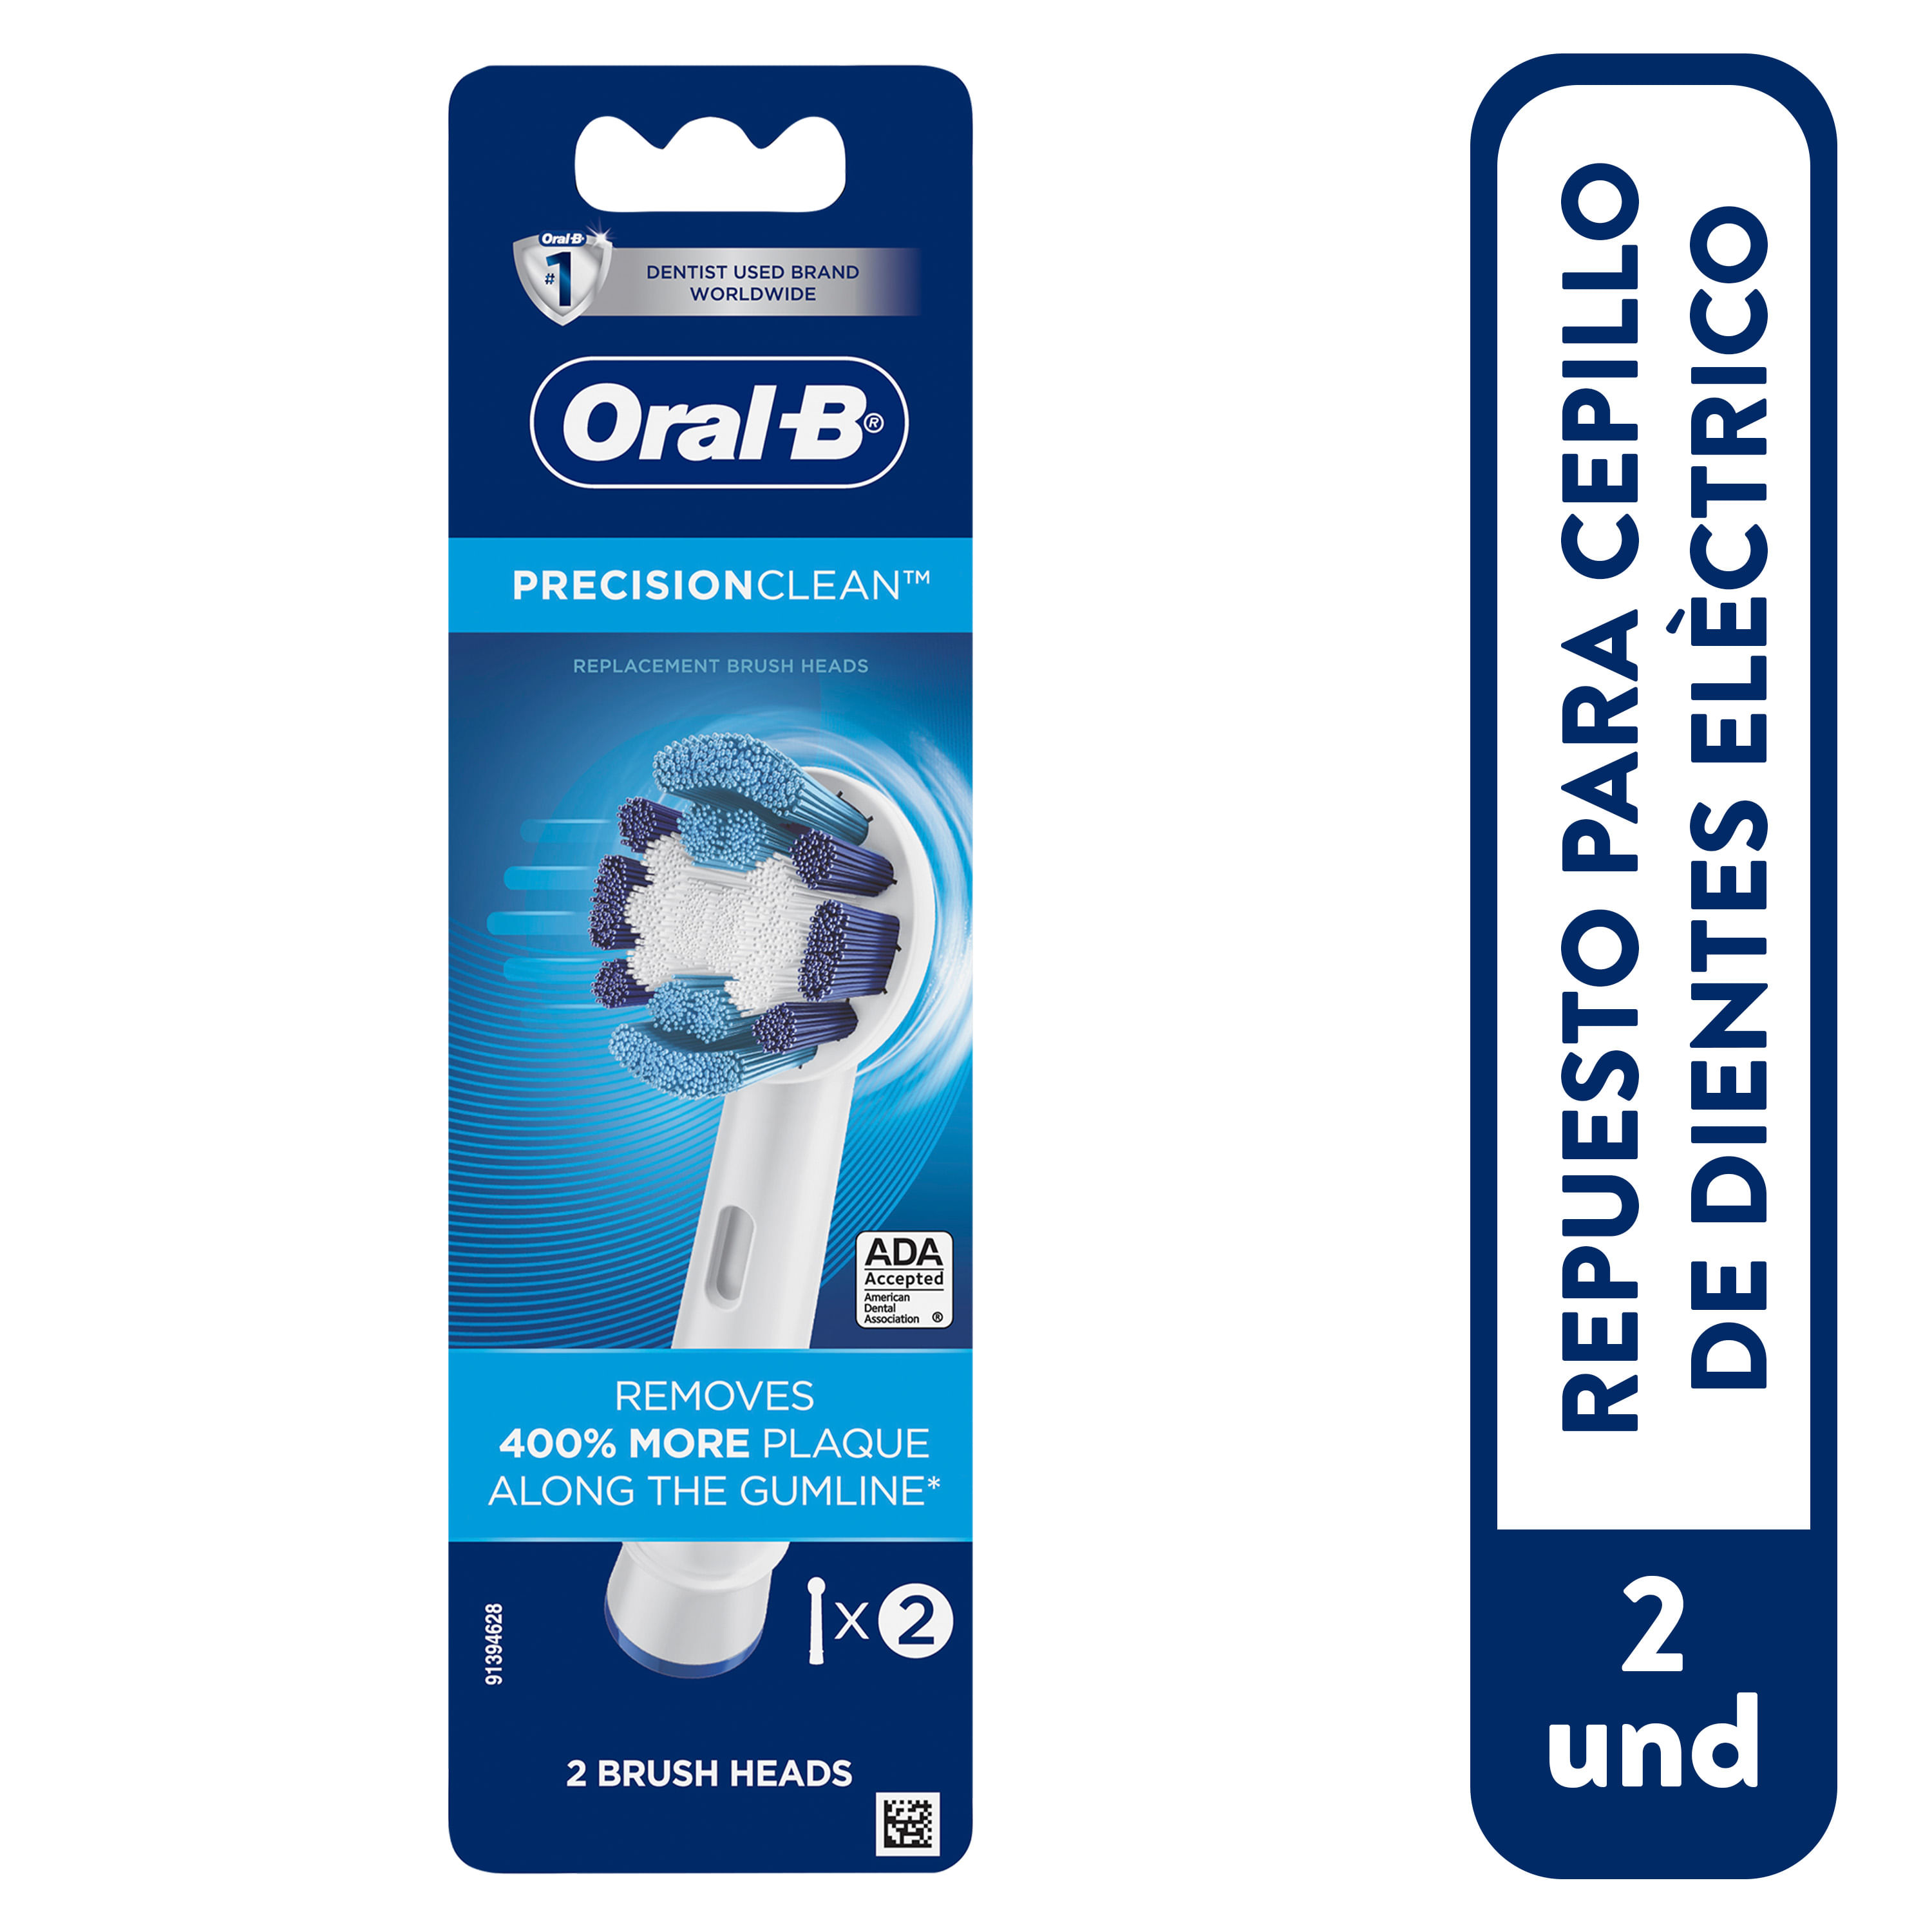 Repuesto para cepillo eléctrico Oral B Floss